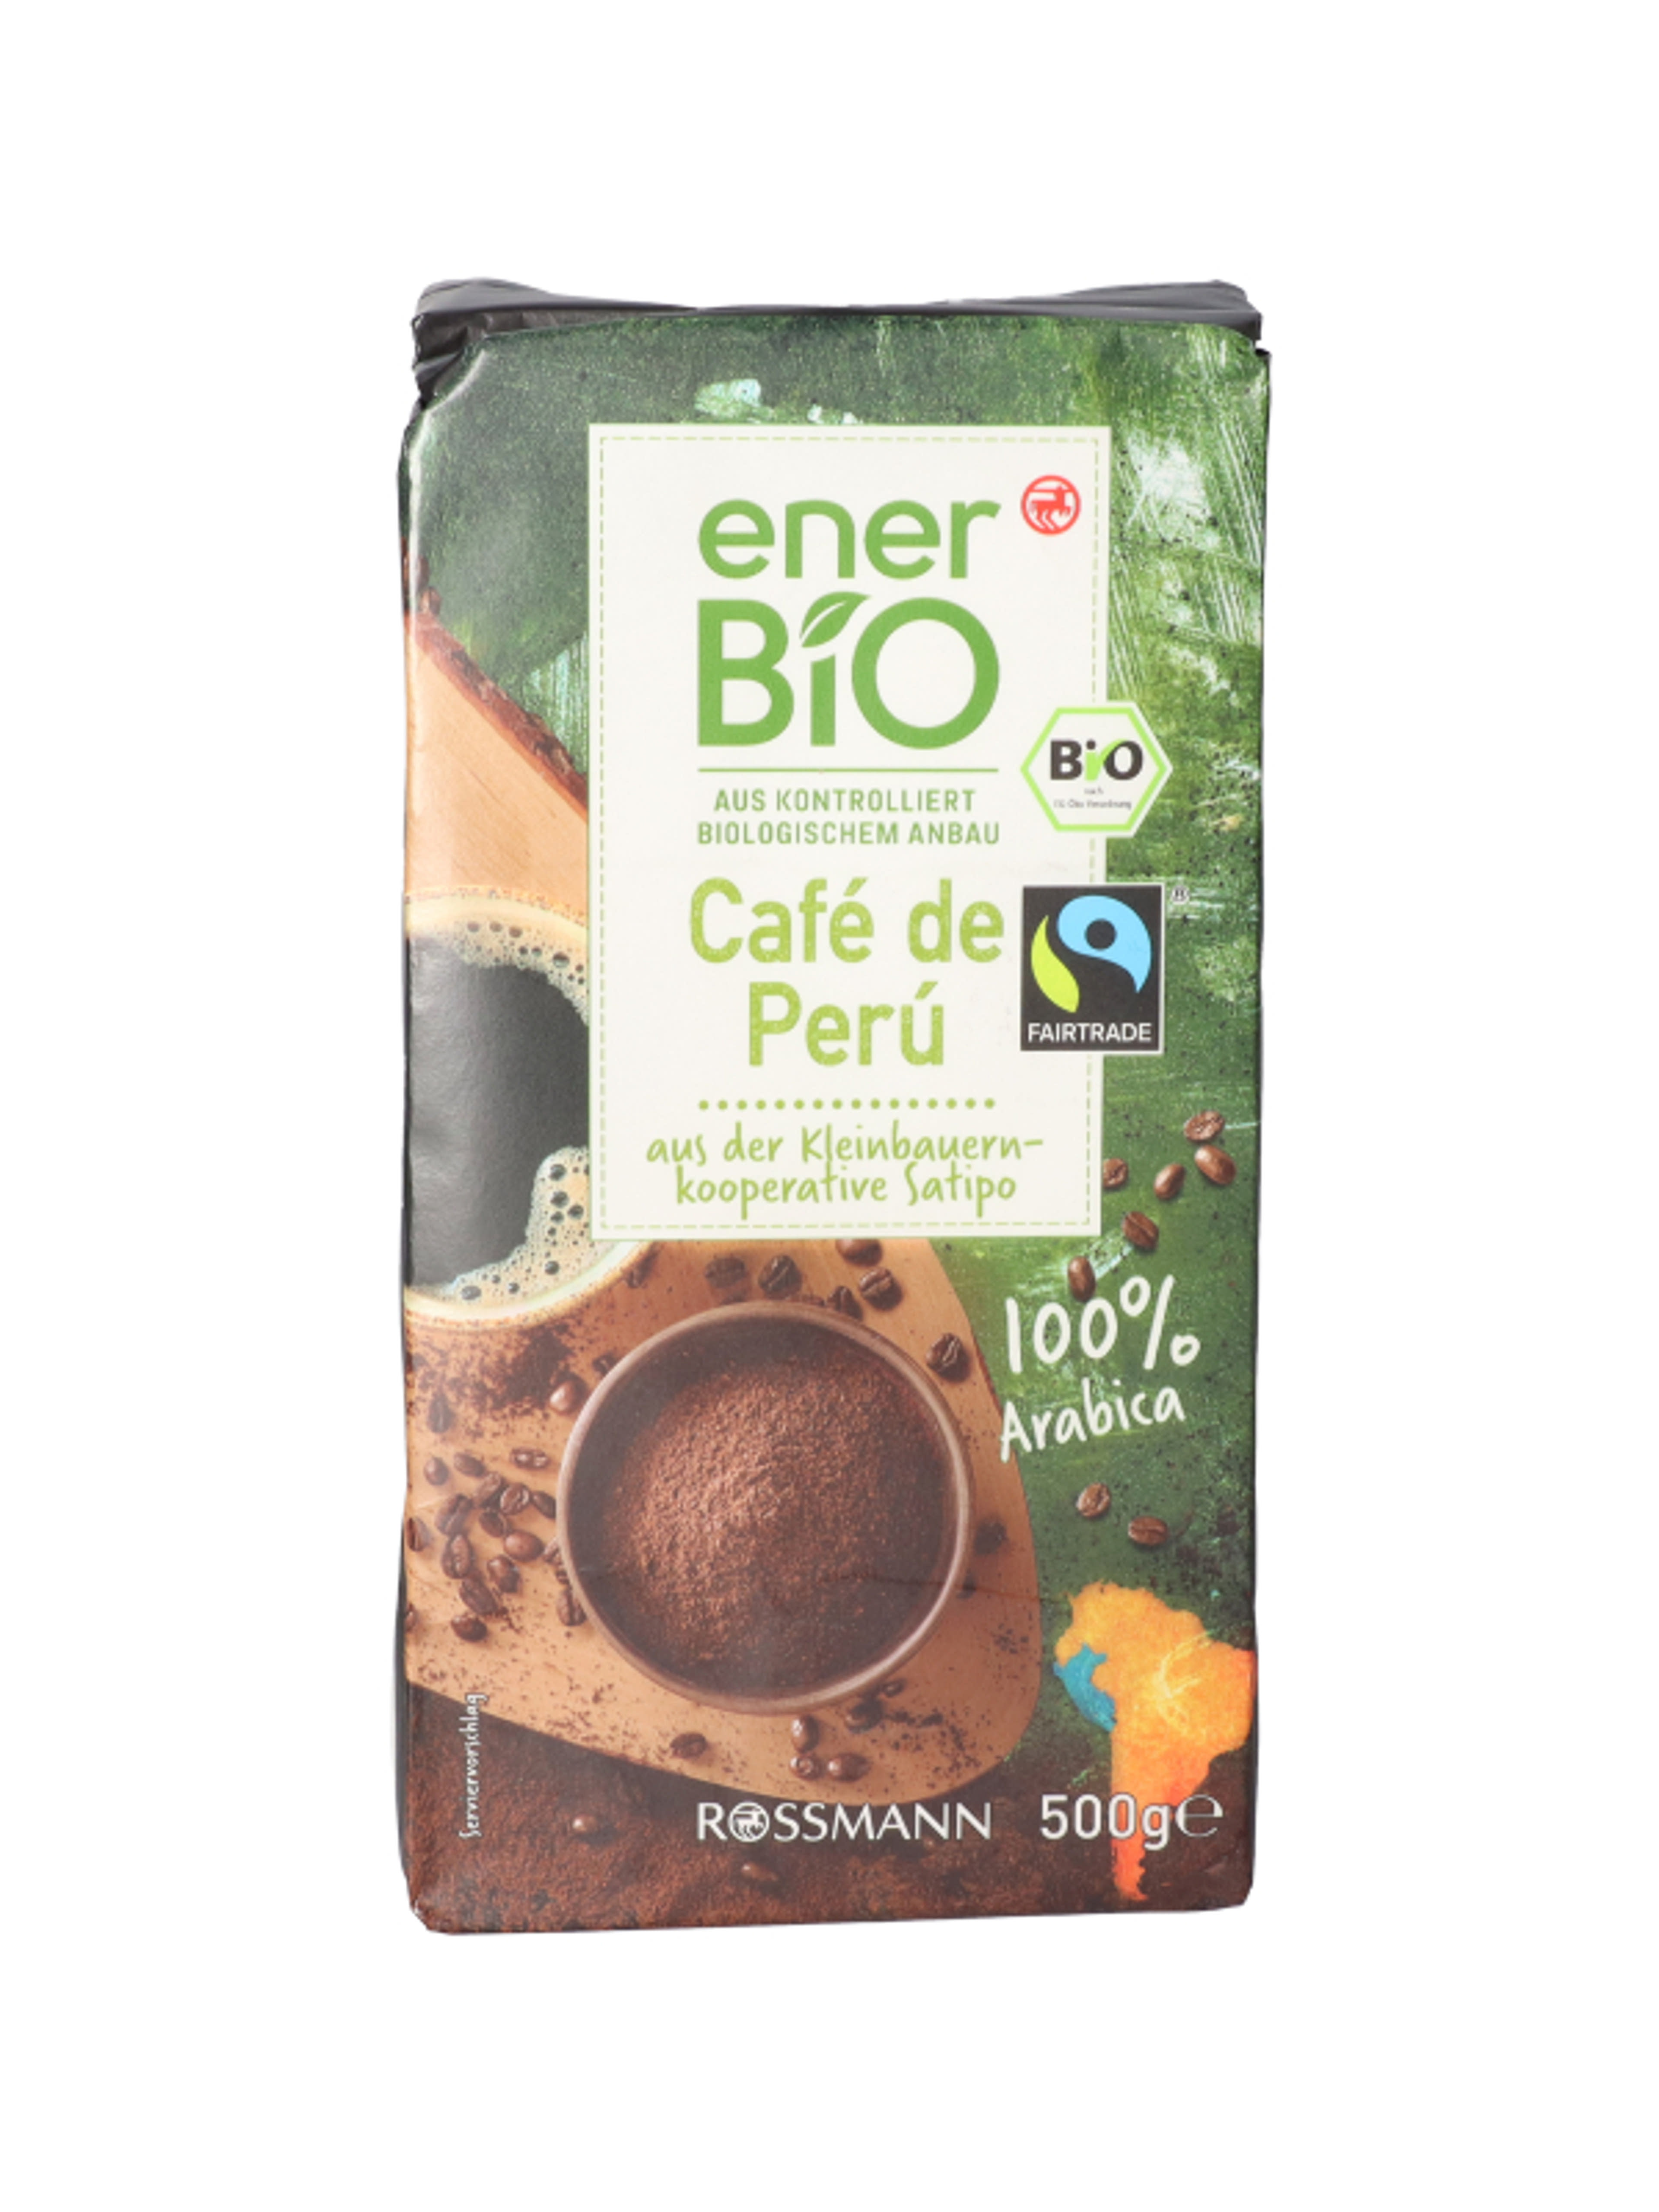 enerBio Cafe de Peru kávé - 500 g
100% bio arabica kávé
természetes módon vegán-1